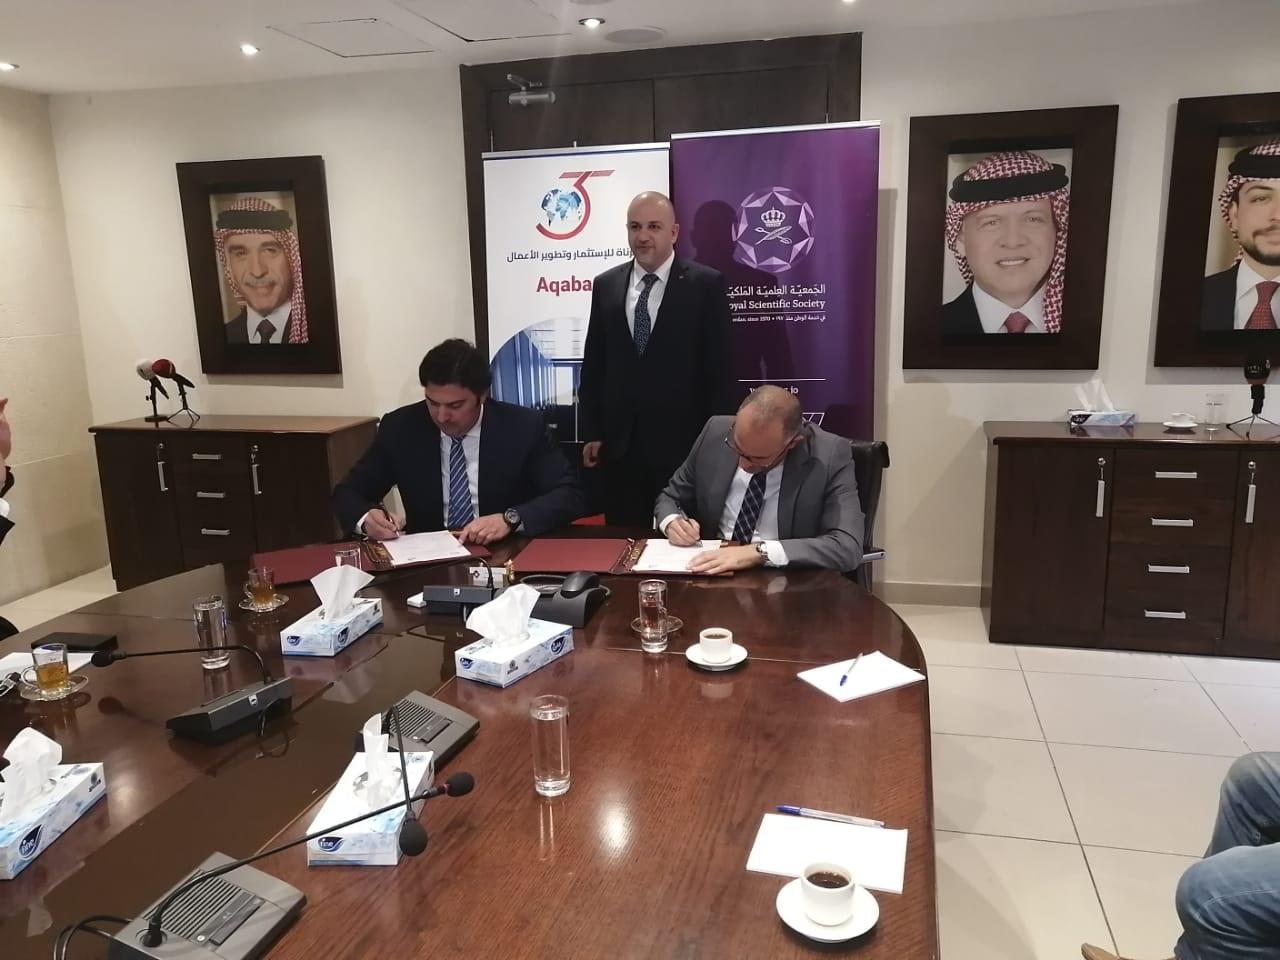 توقيع الجمعية العلمية الملكية مذكرة تفاهم مع شركة المرناة للاستثمار و تطوير الأعمال، لإطلاق أول نقطة ربط للإنترنت Aqaba IX في العقبة. (وزارة الاقتصاد الرقمي)